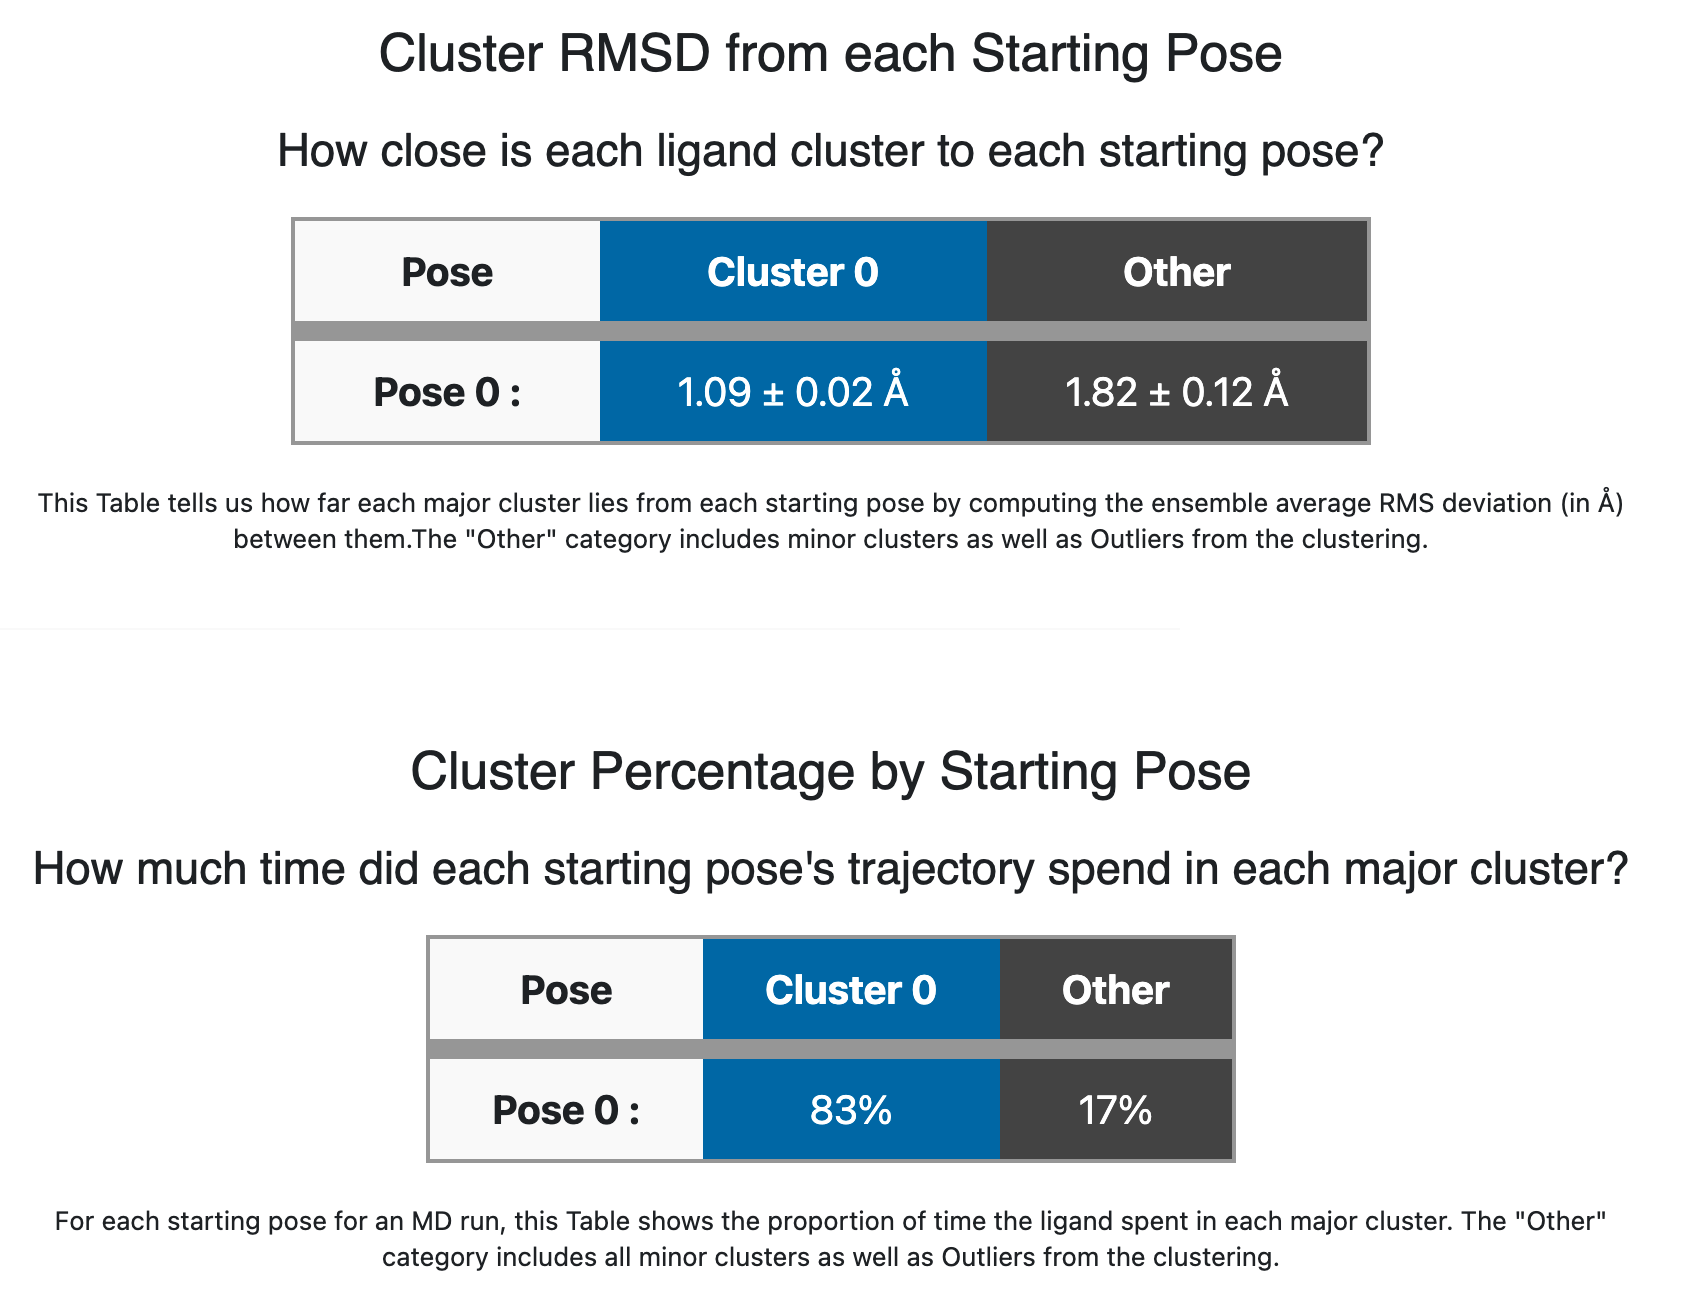 Cluster/Pose information for ligand 35 (single pose)